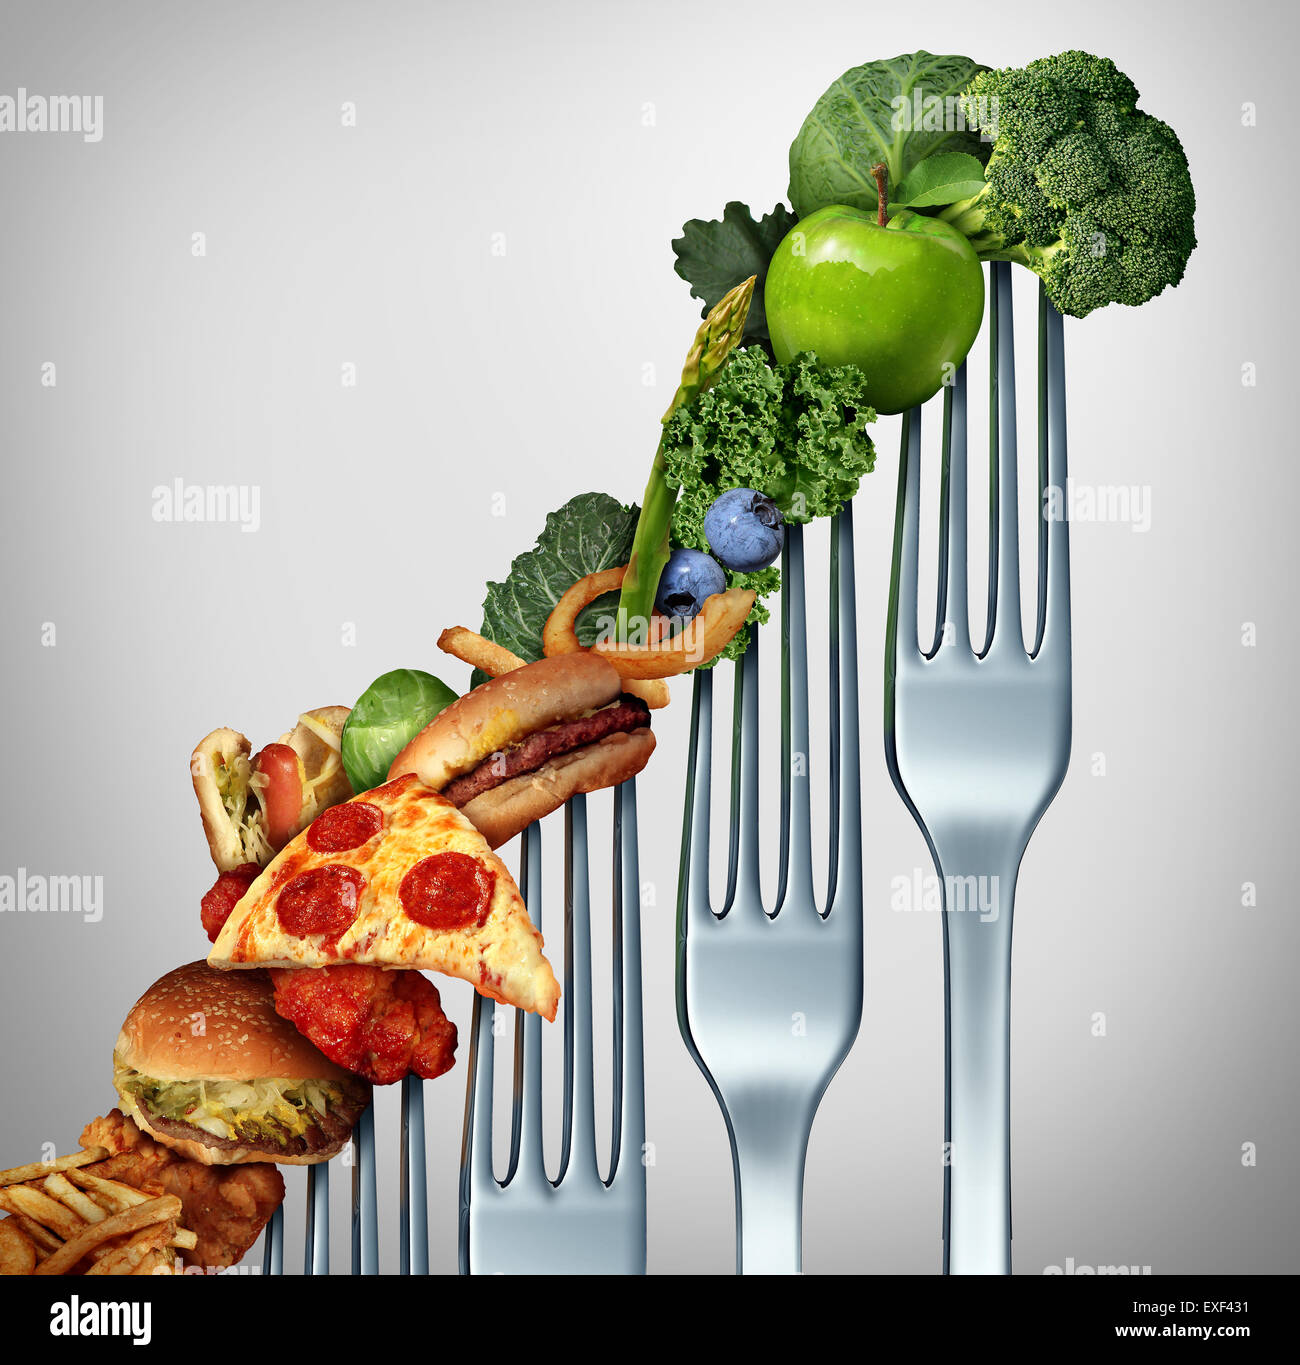 Ernährung Fortschritt ändern wie ein gesunder Lebensstil Verbesserung Konzept und weiterentwickelt, um der Herausforderung der Verzehr von rohen Lebensmitteln und Gewicht zu verlieren, als eine Gruppe von steigenden Gabeln mit Mahlzeit Artikeln darauf aus fetthaltigen Lebensmitteln auf Gemüse und Obst. Stockfoto